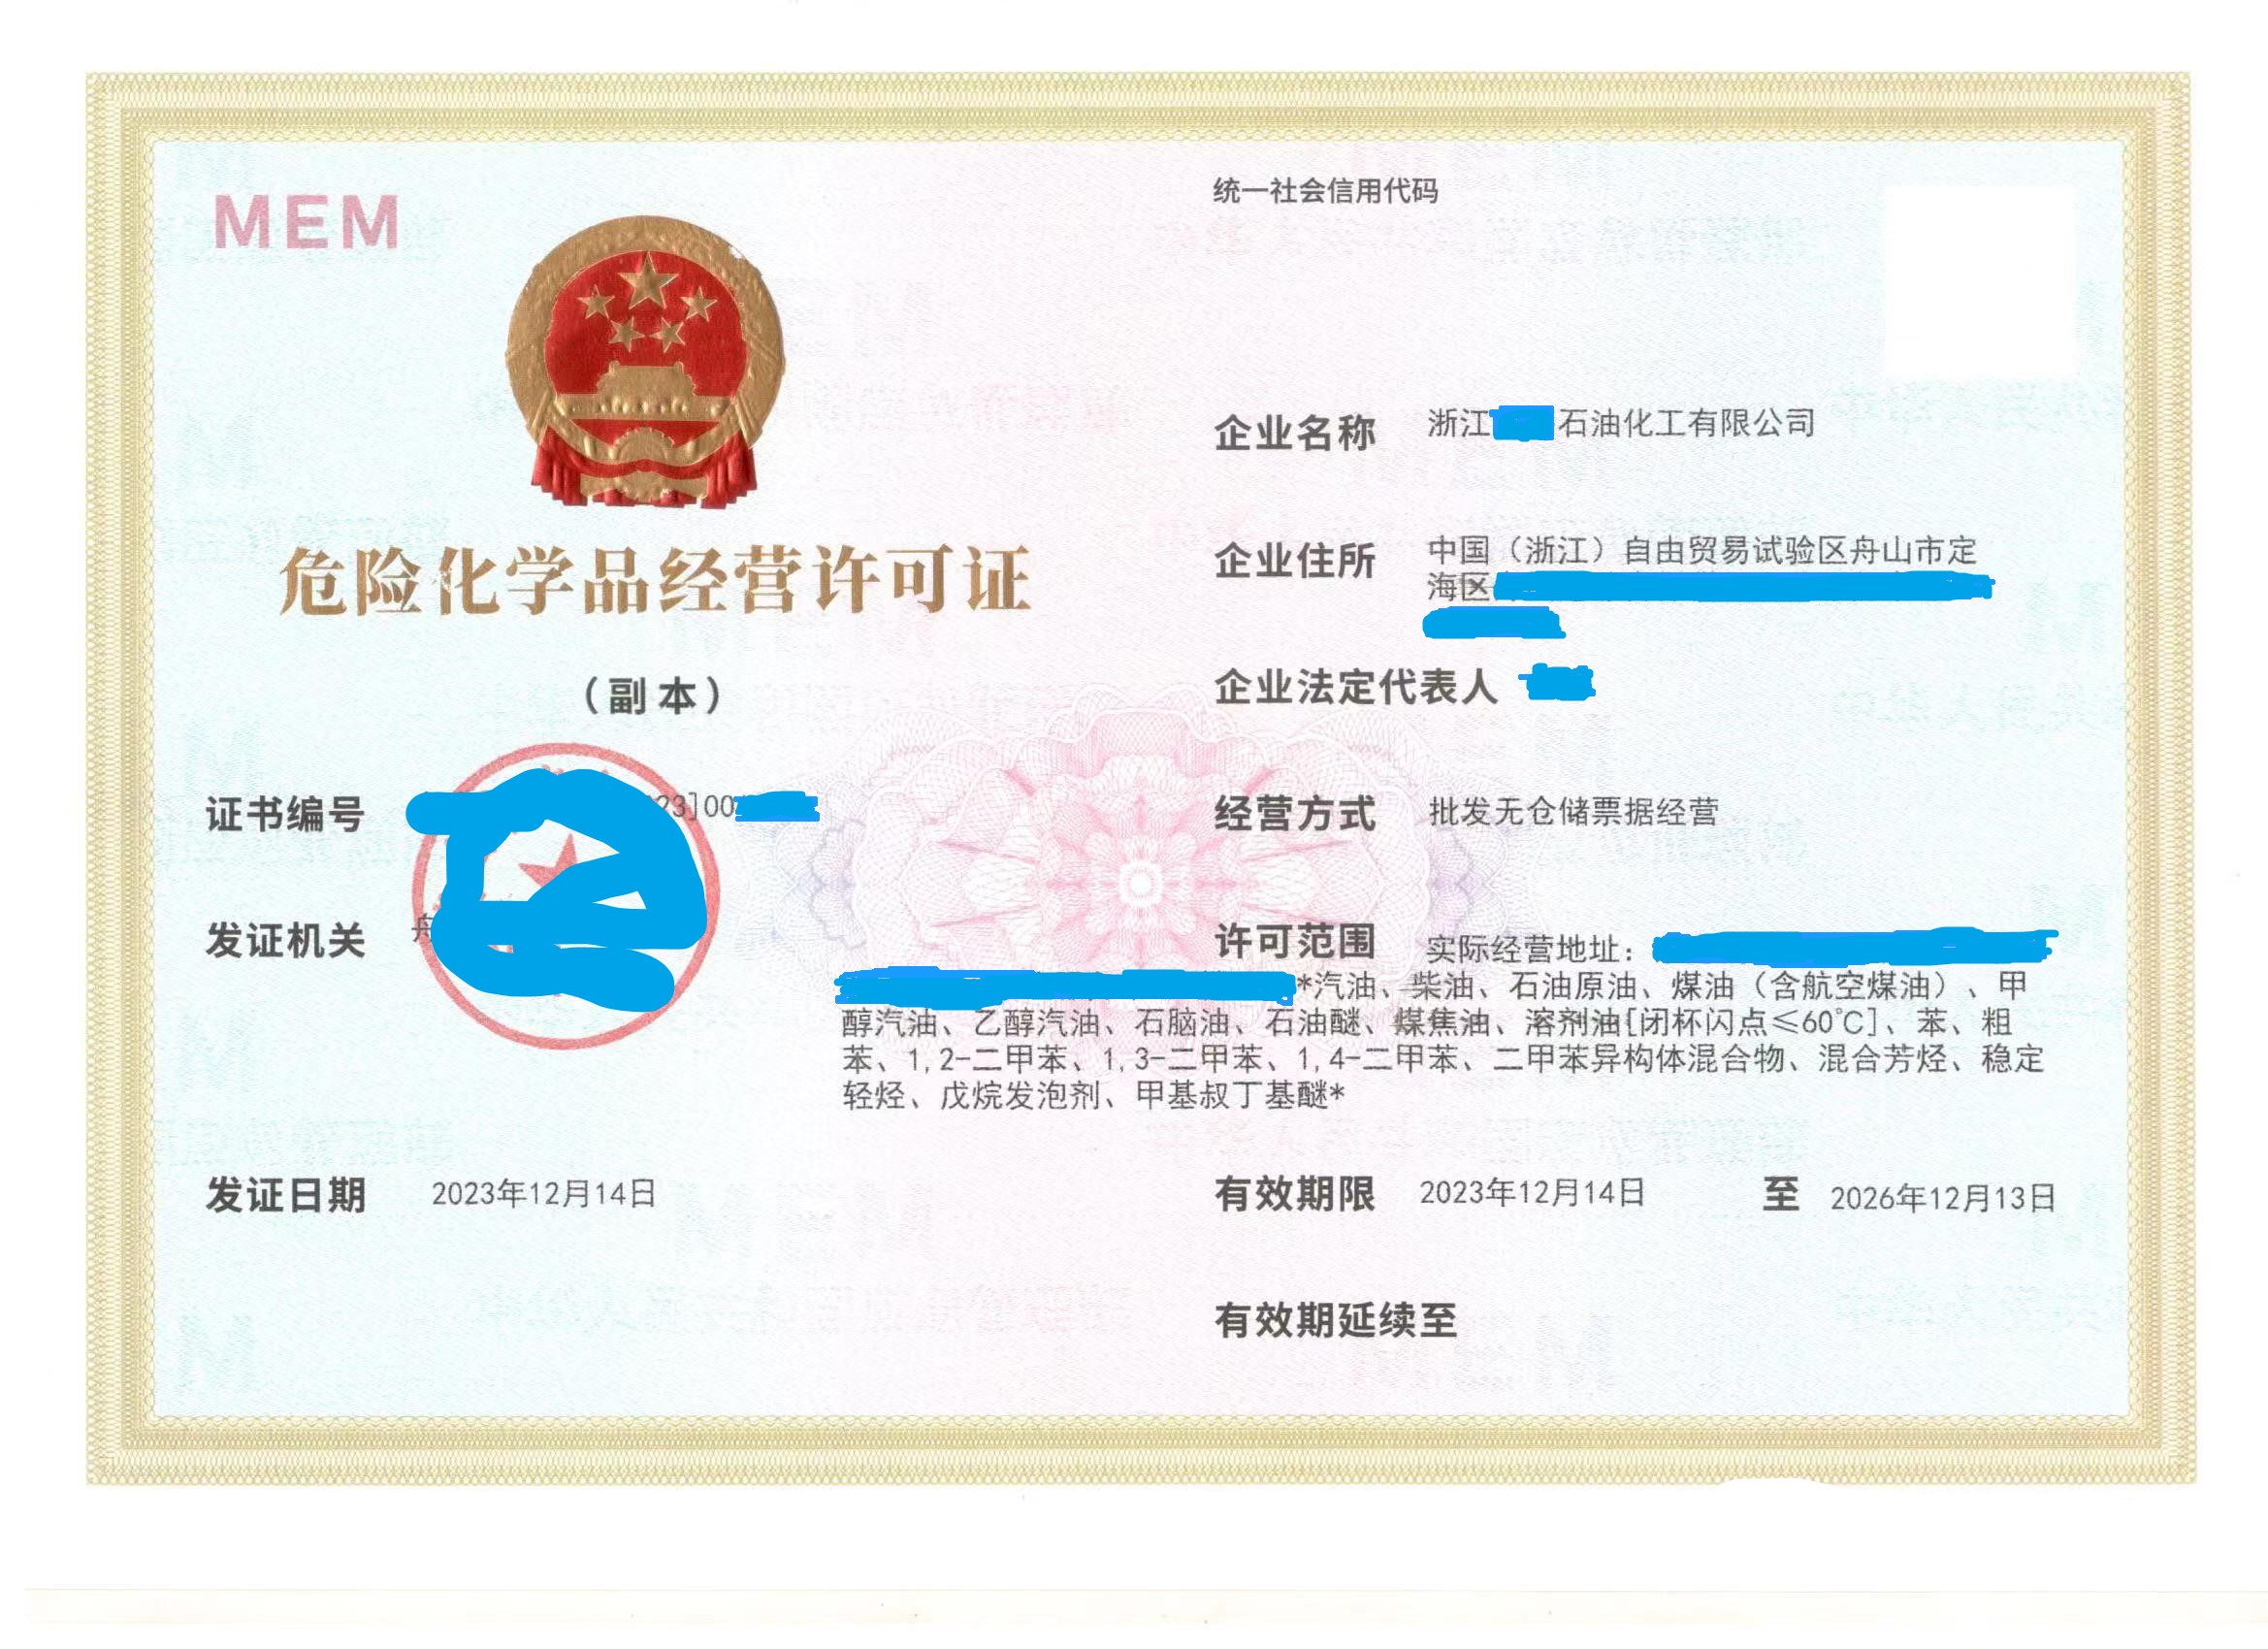 北京一般纳税人申请流程